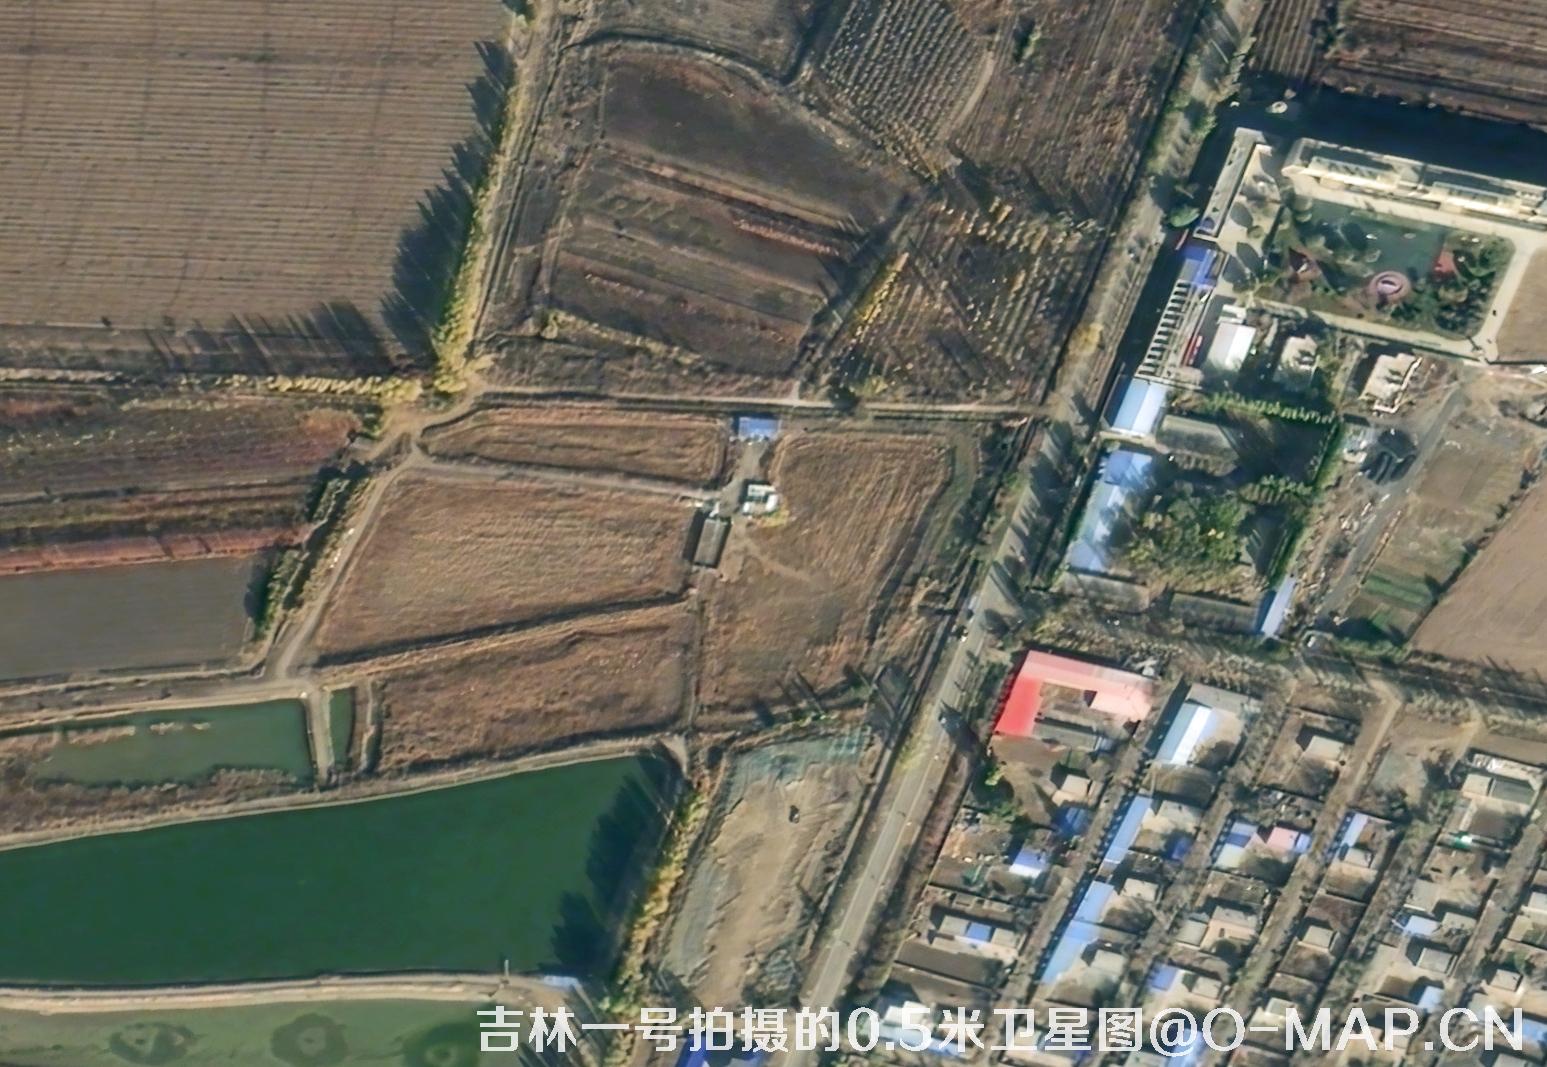 jilin50cm卫星影像图